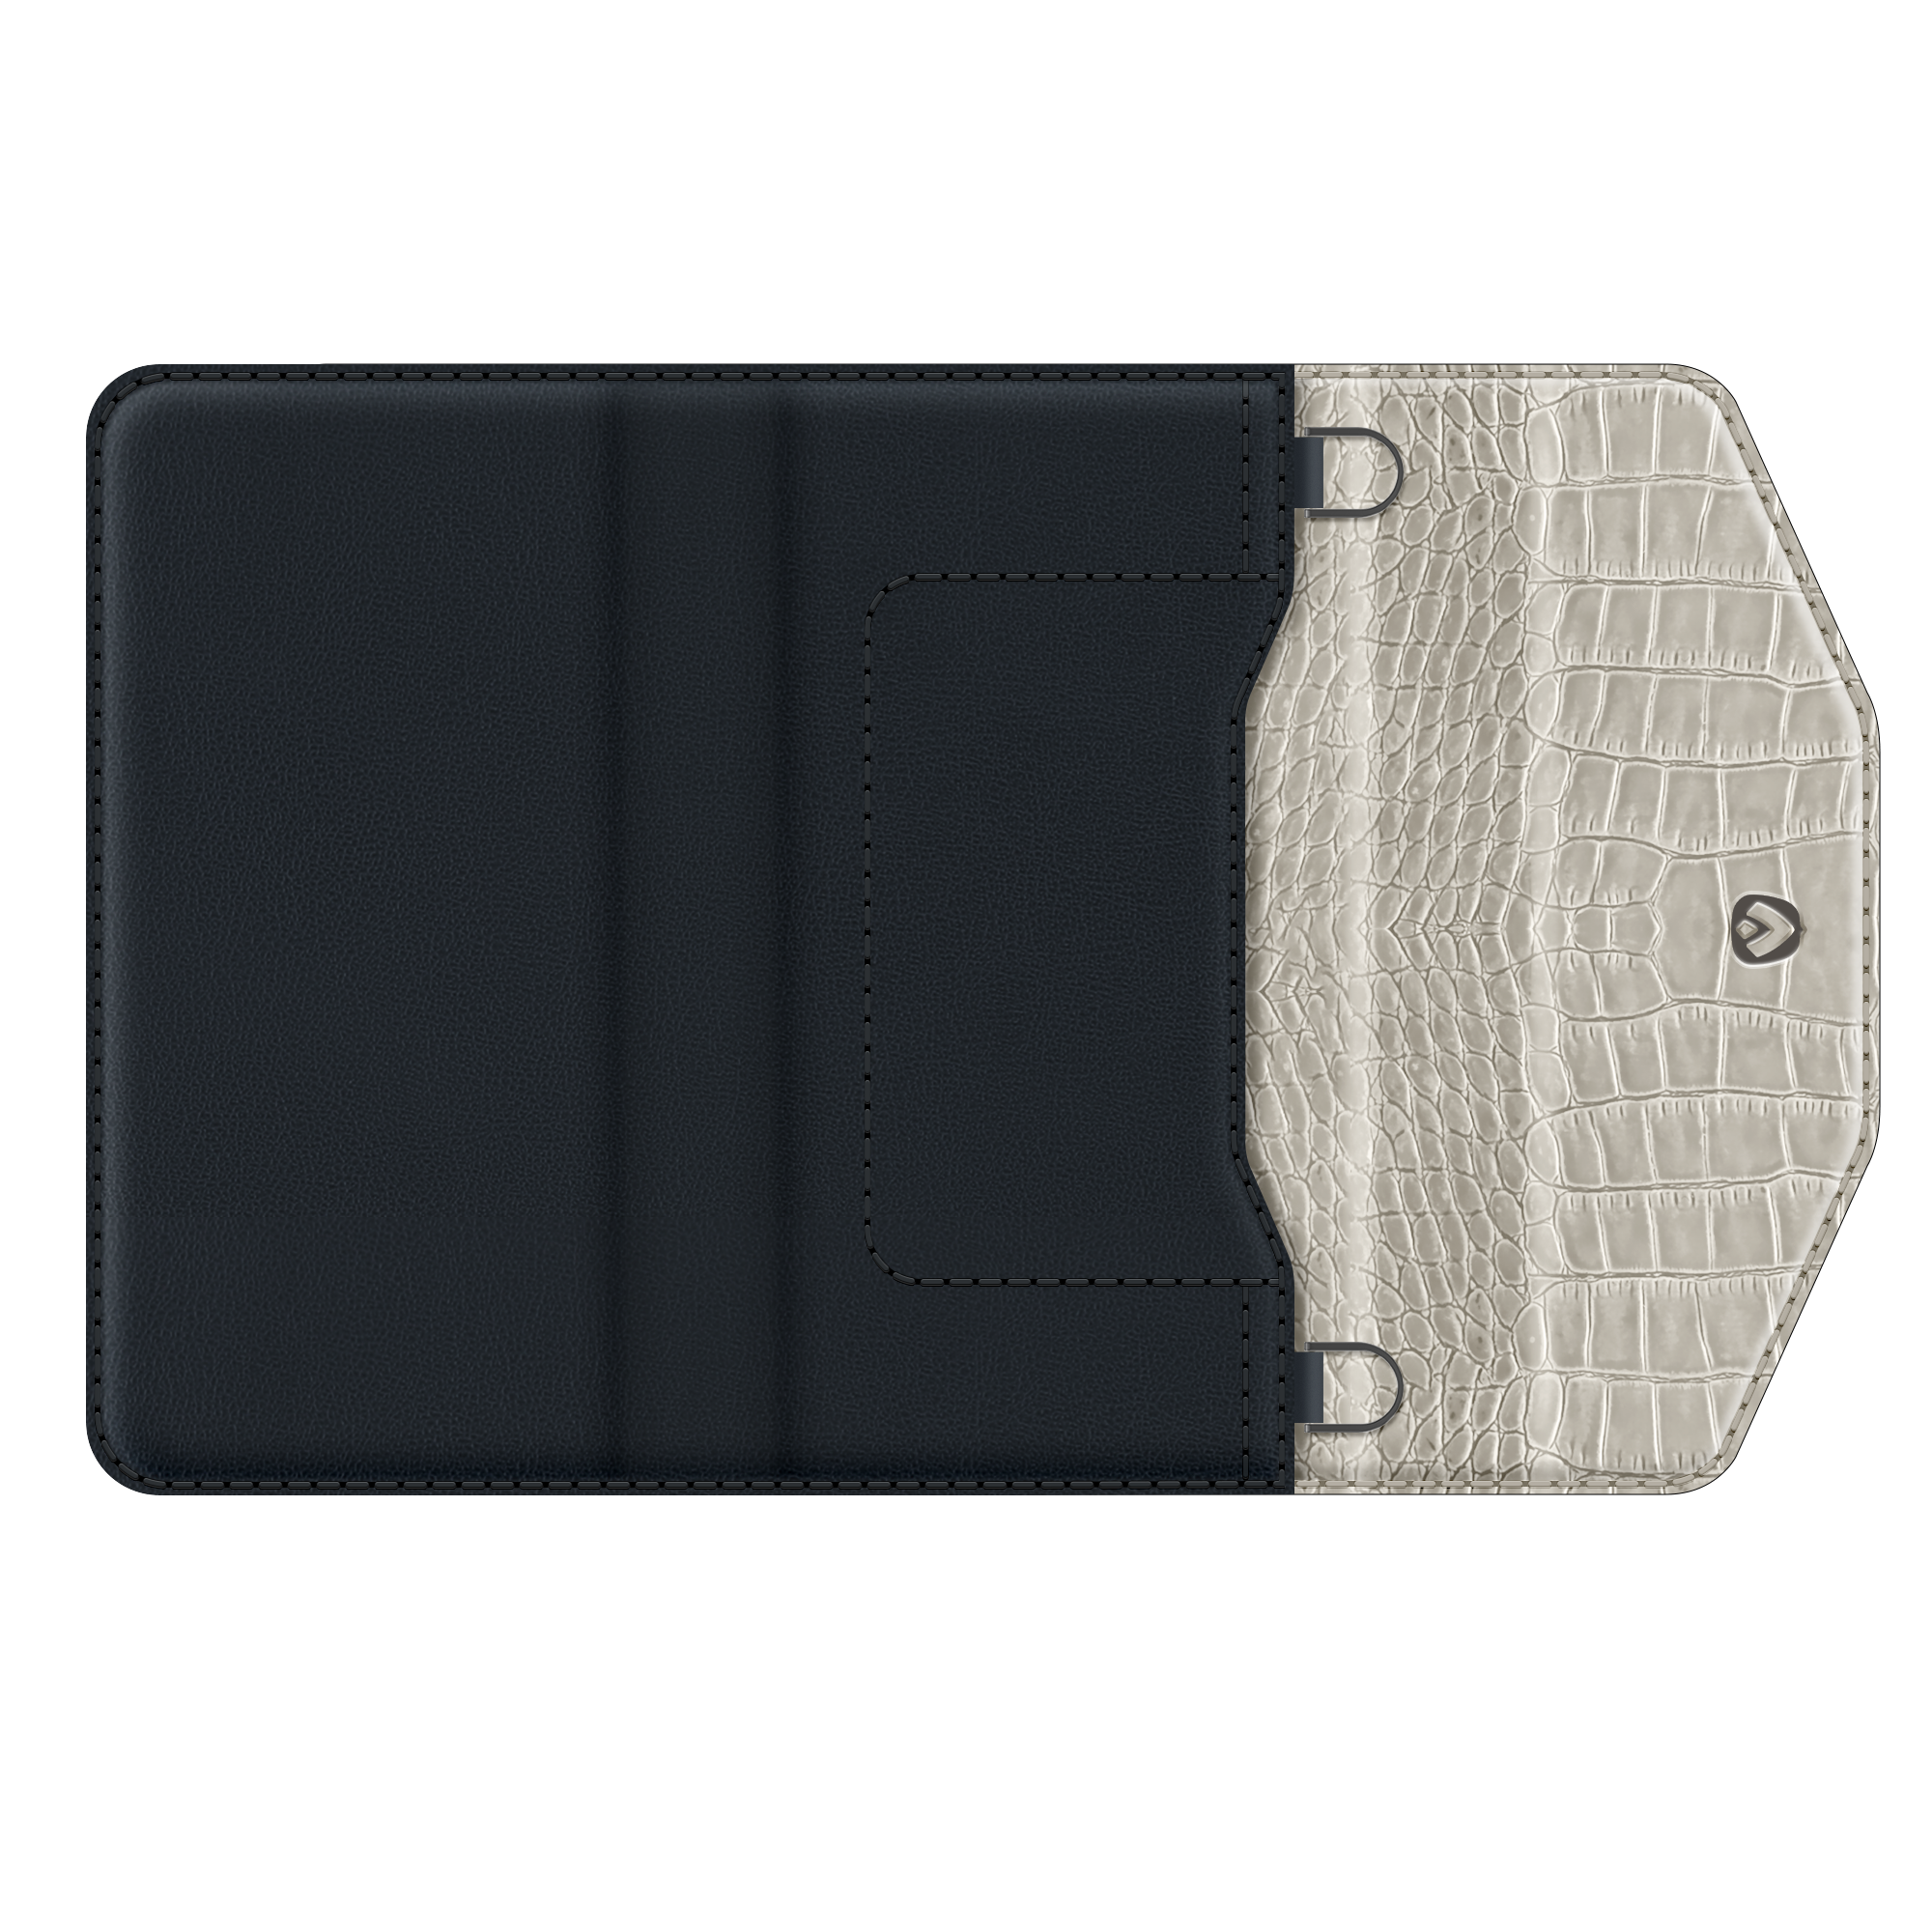 Entfernbare 2-in-1 Luxus Clutch iPhone 12 Pro Max Grau